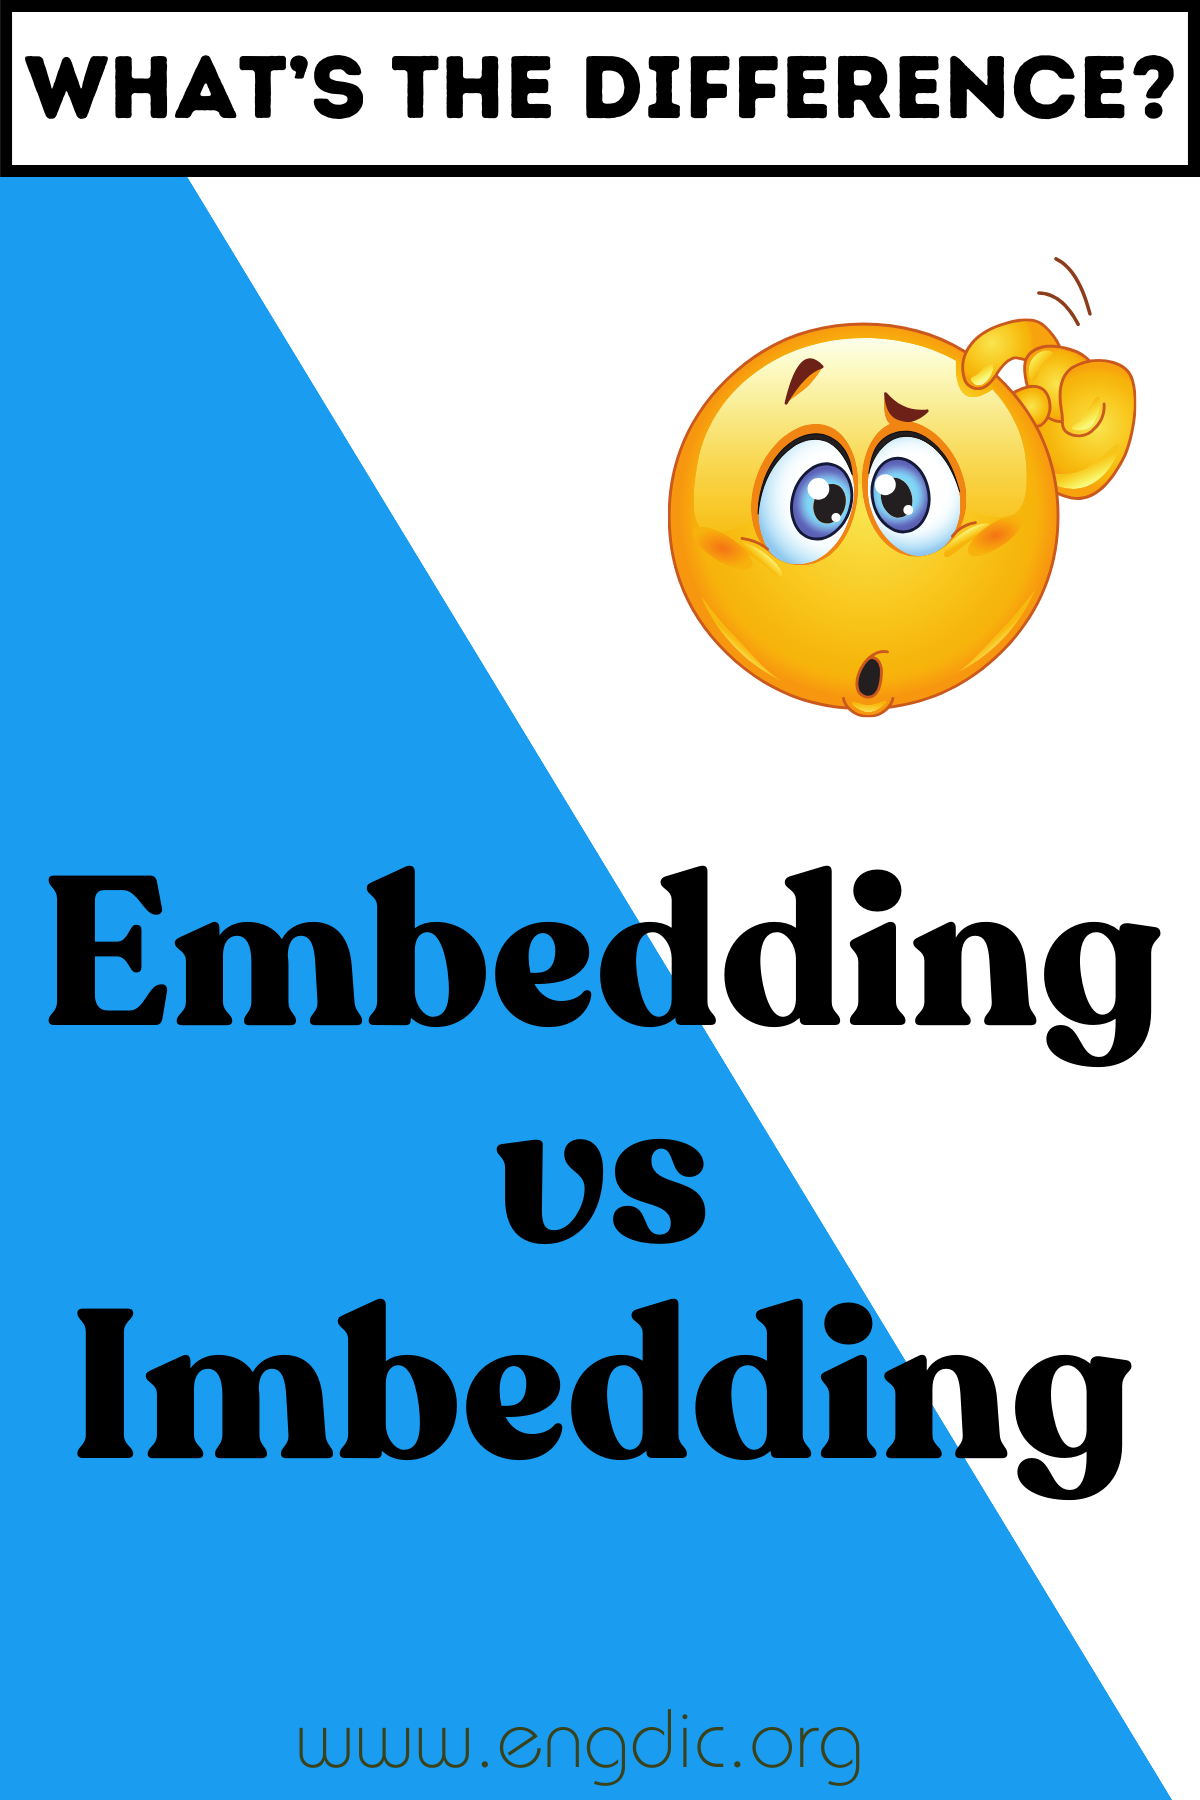 Embedding vs Imbedding